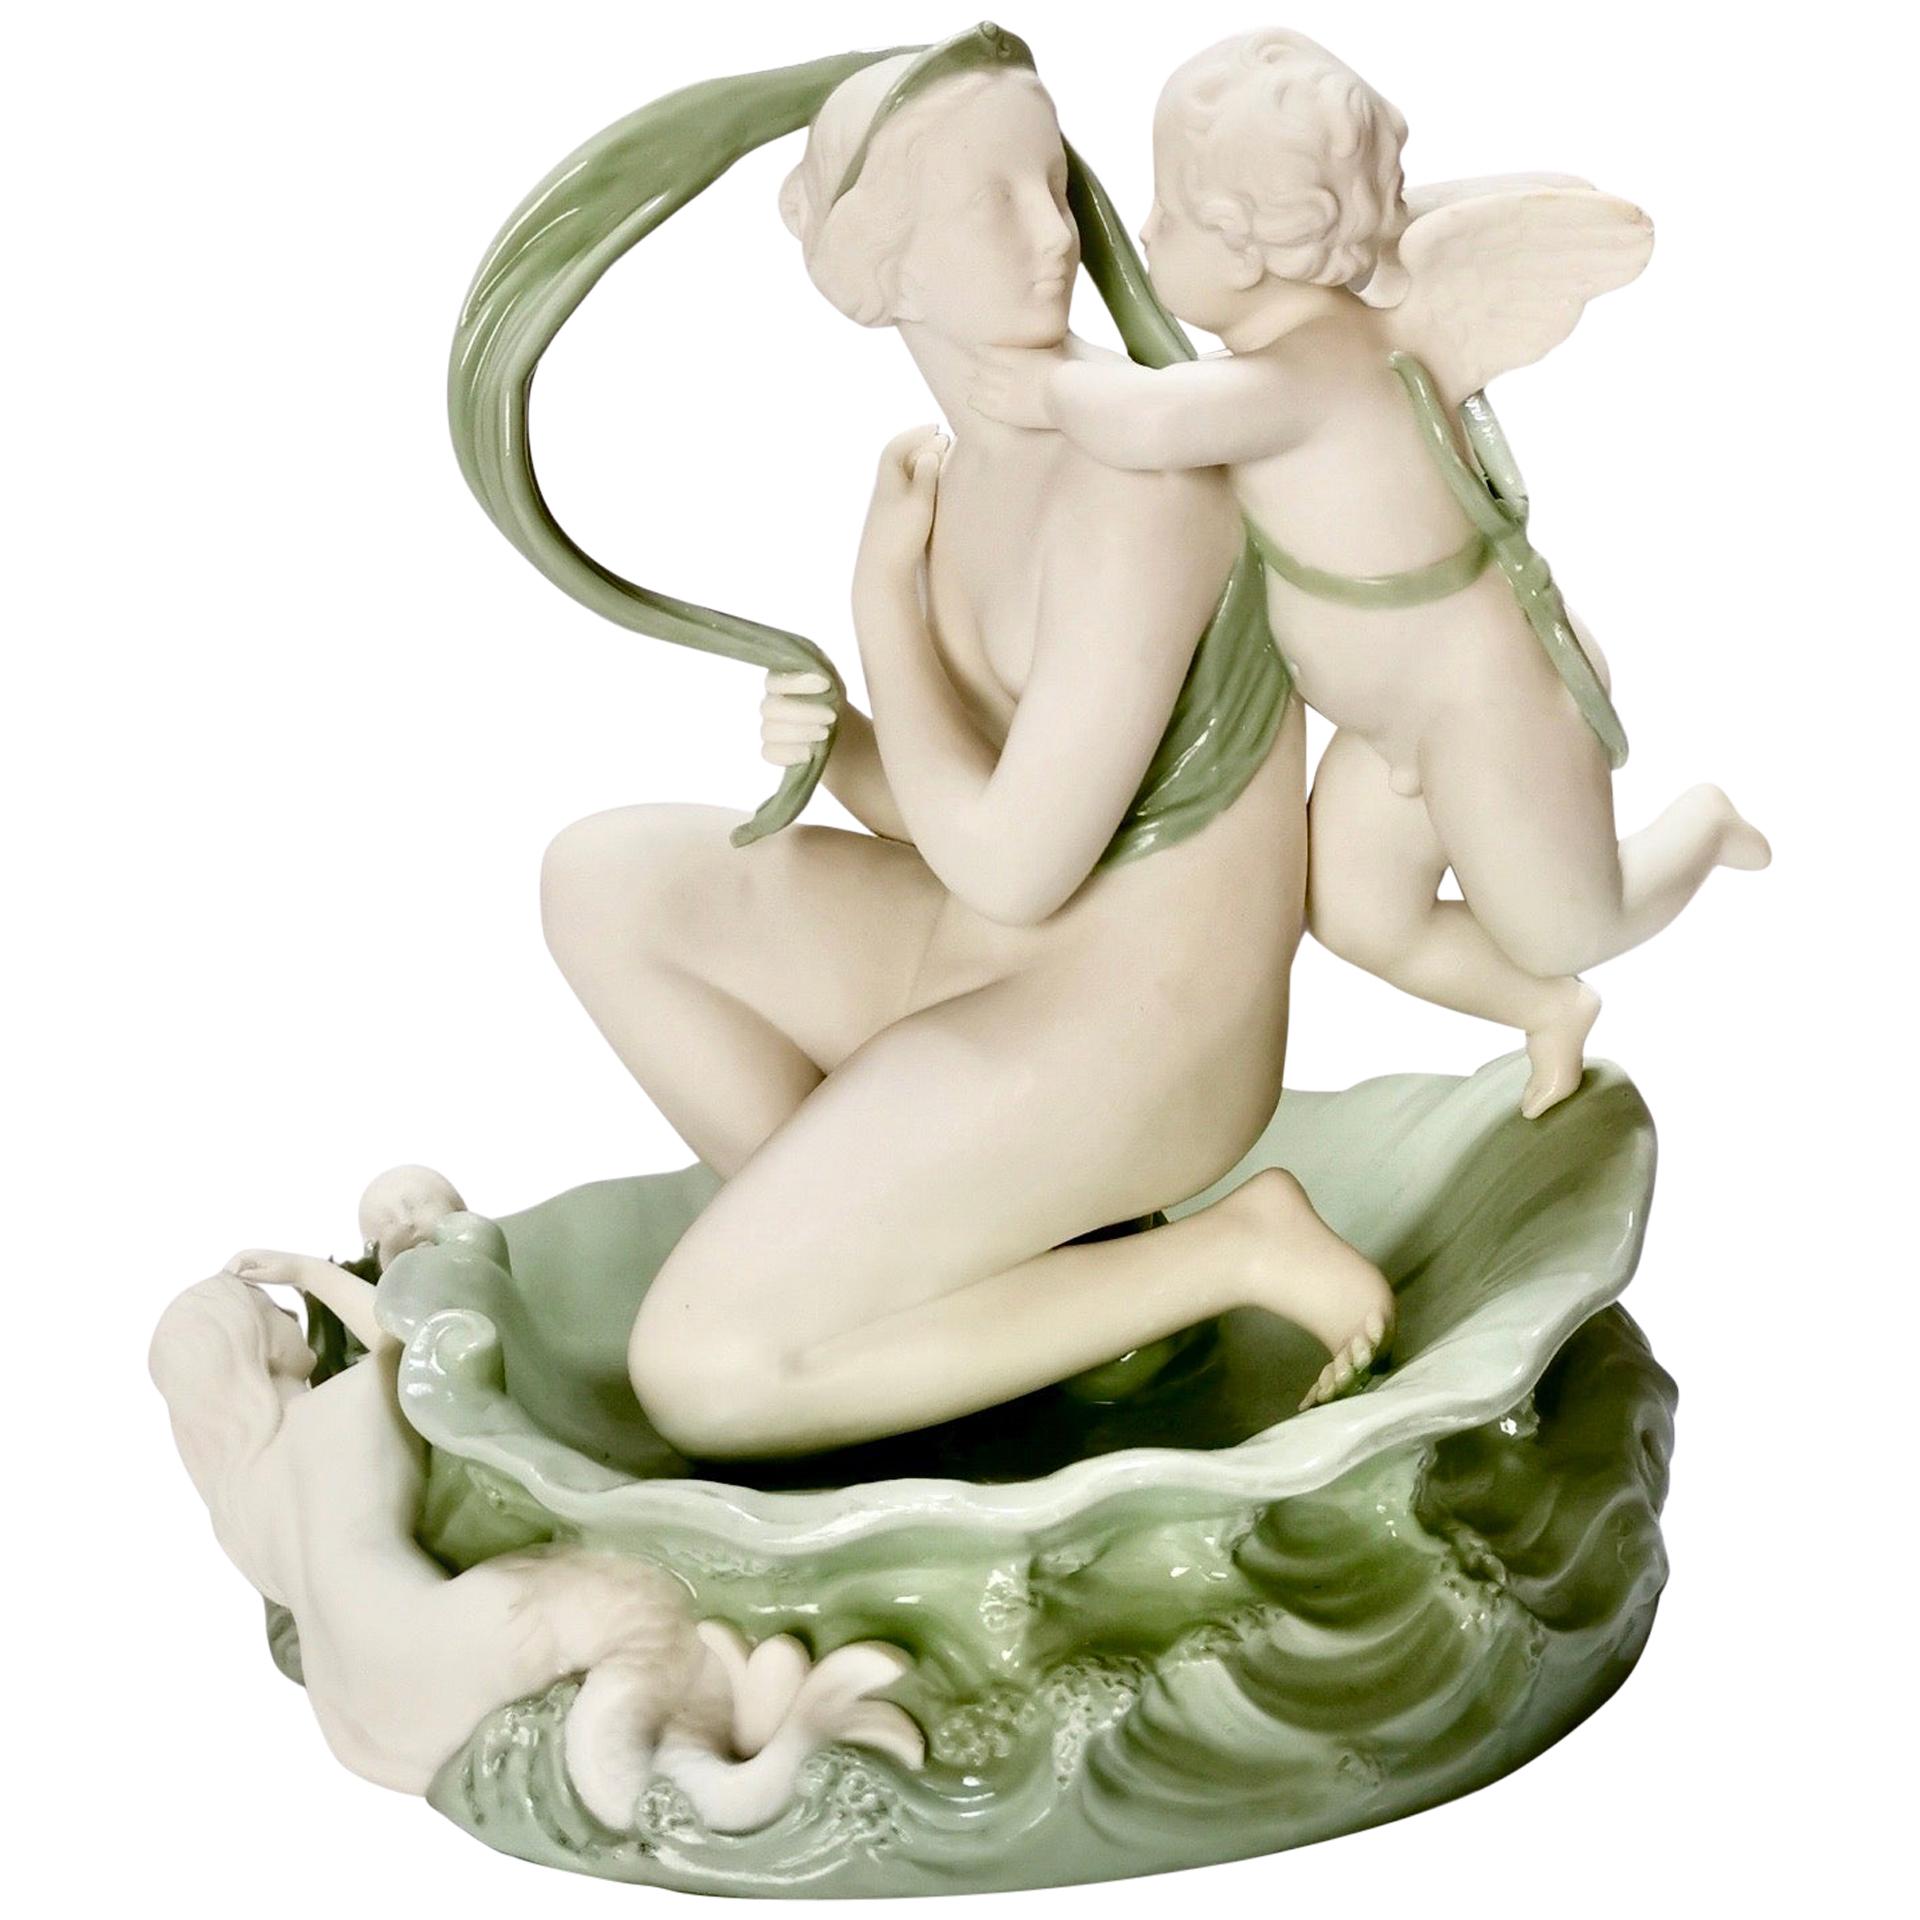 Minton Celadon Parian Porcelain Sculpture, Venus and Cupid, Victorian, 1861